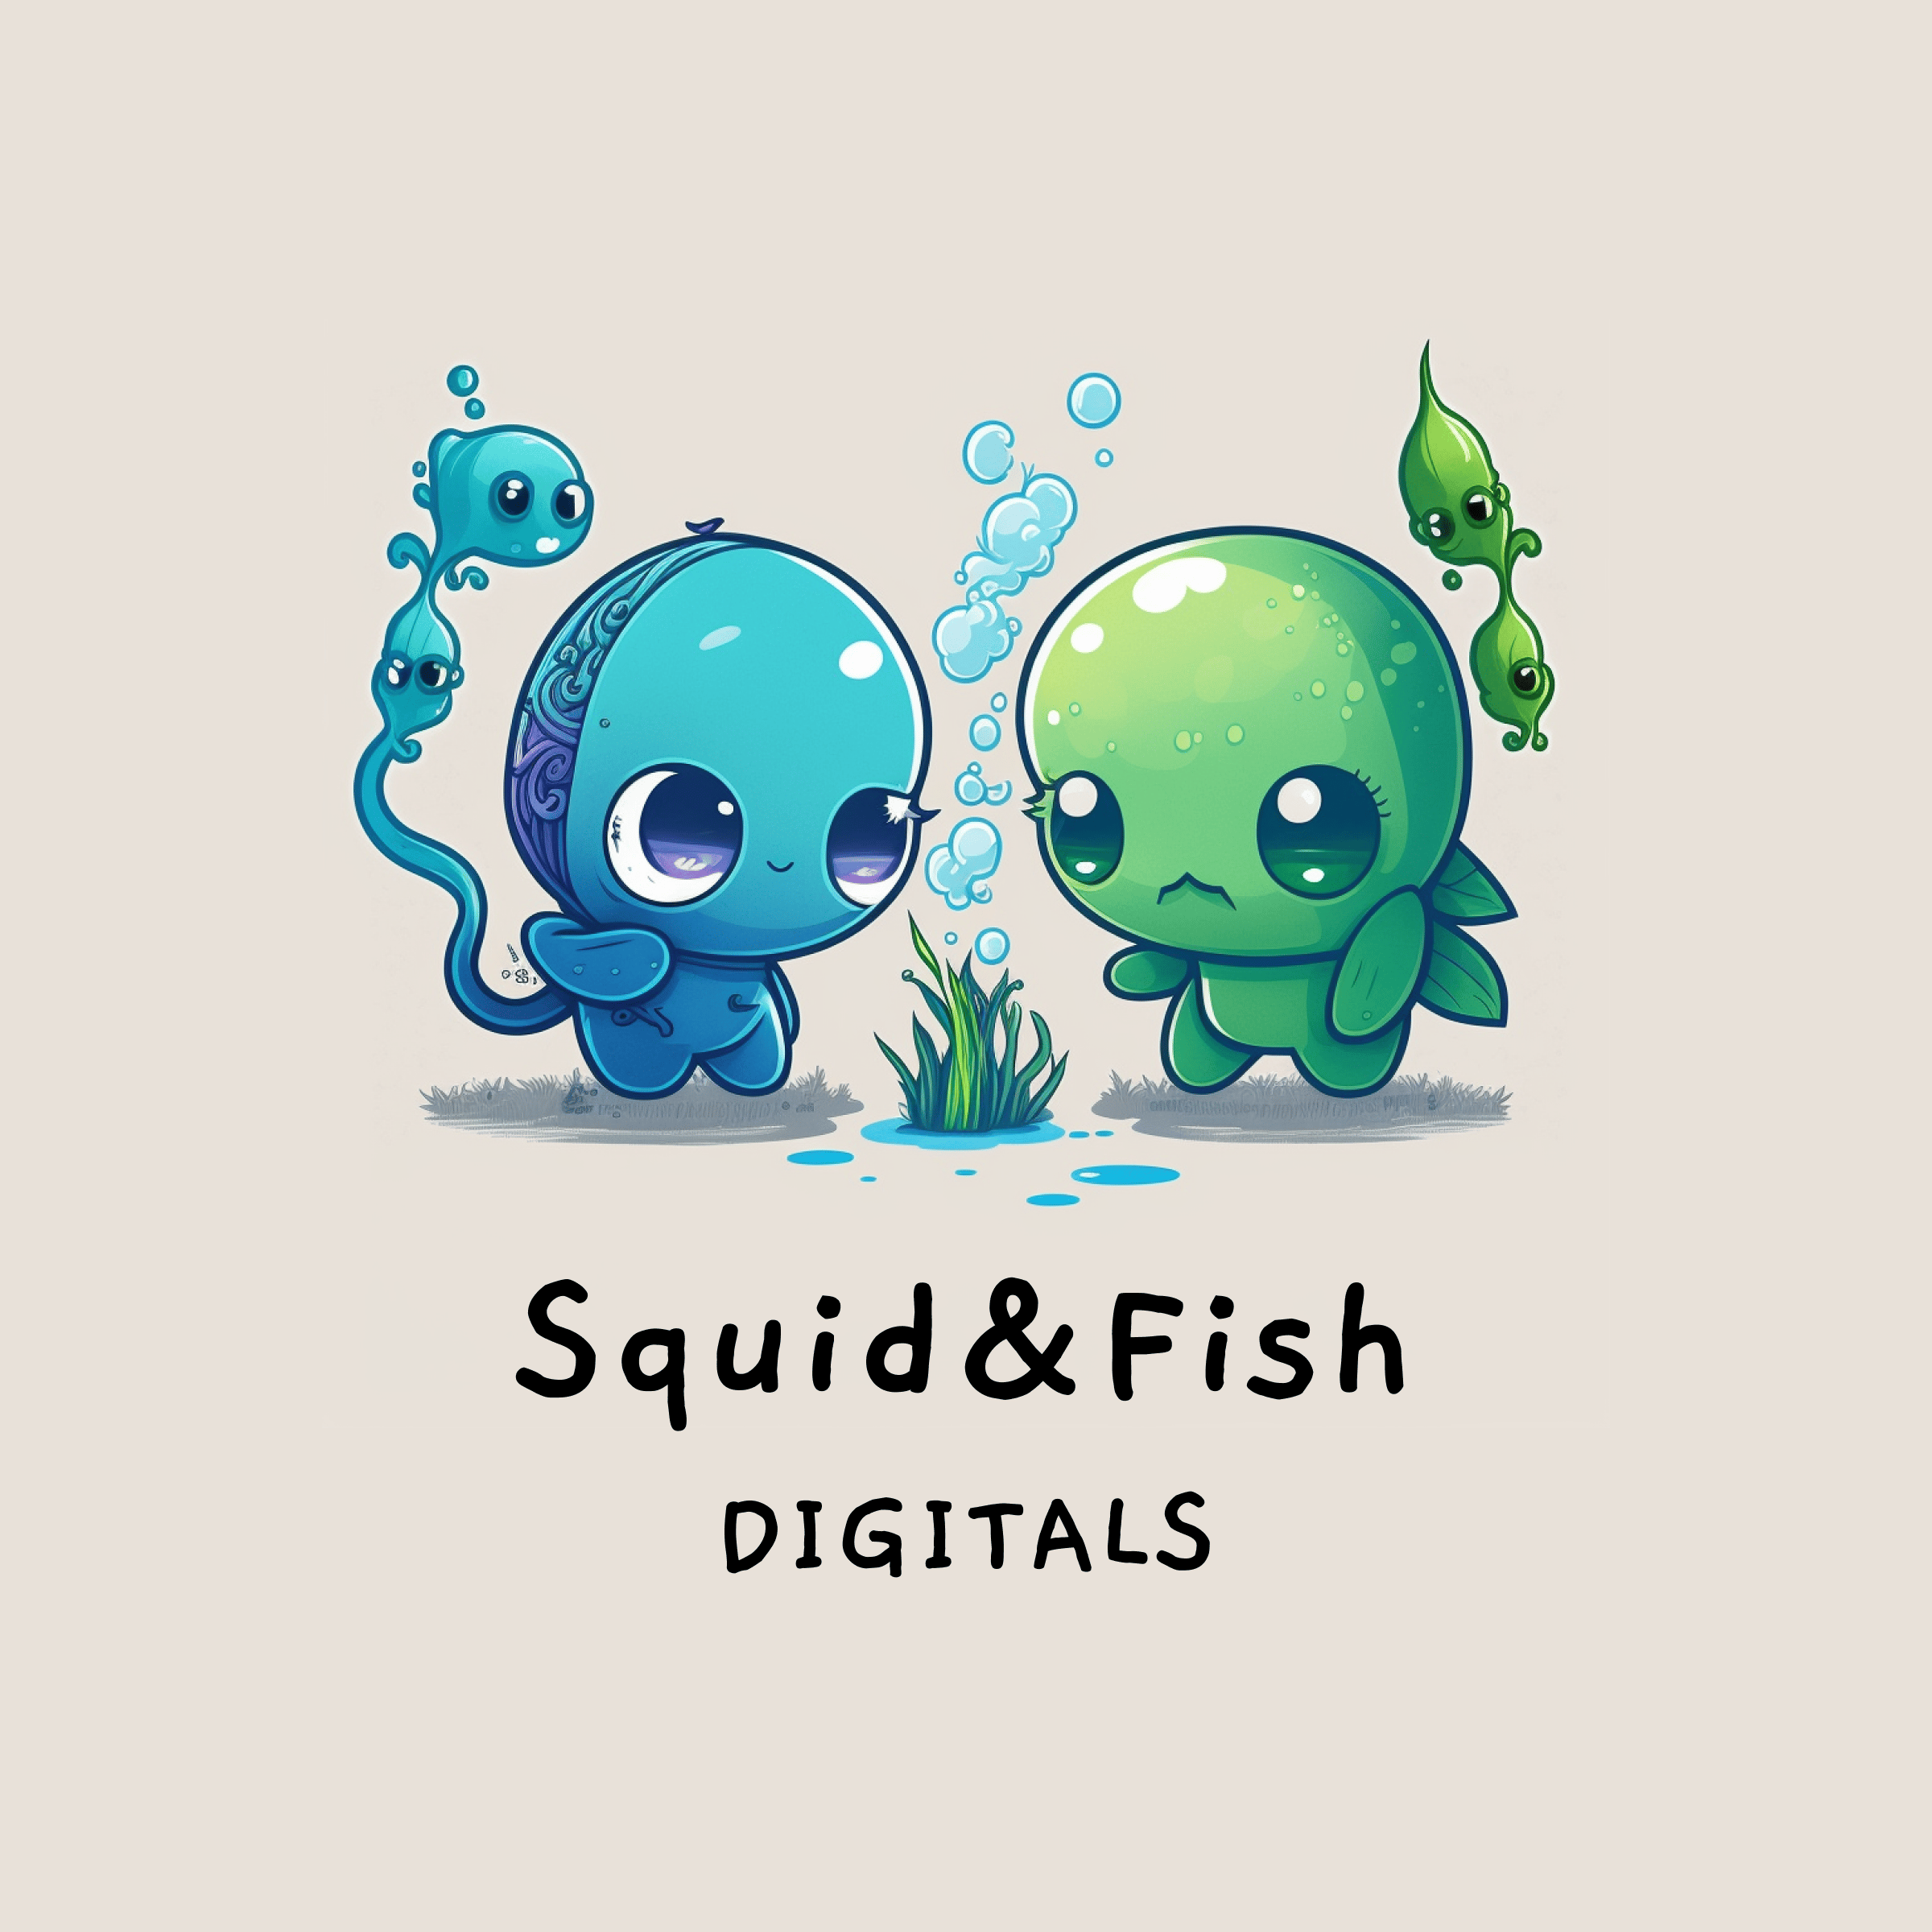 Squid & Fish 아바타